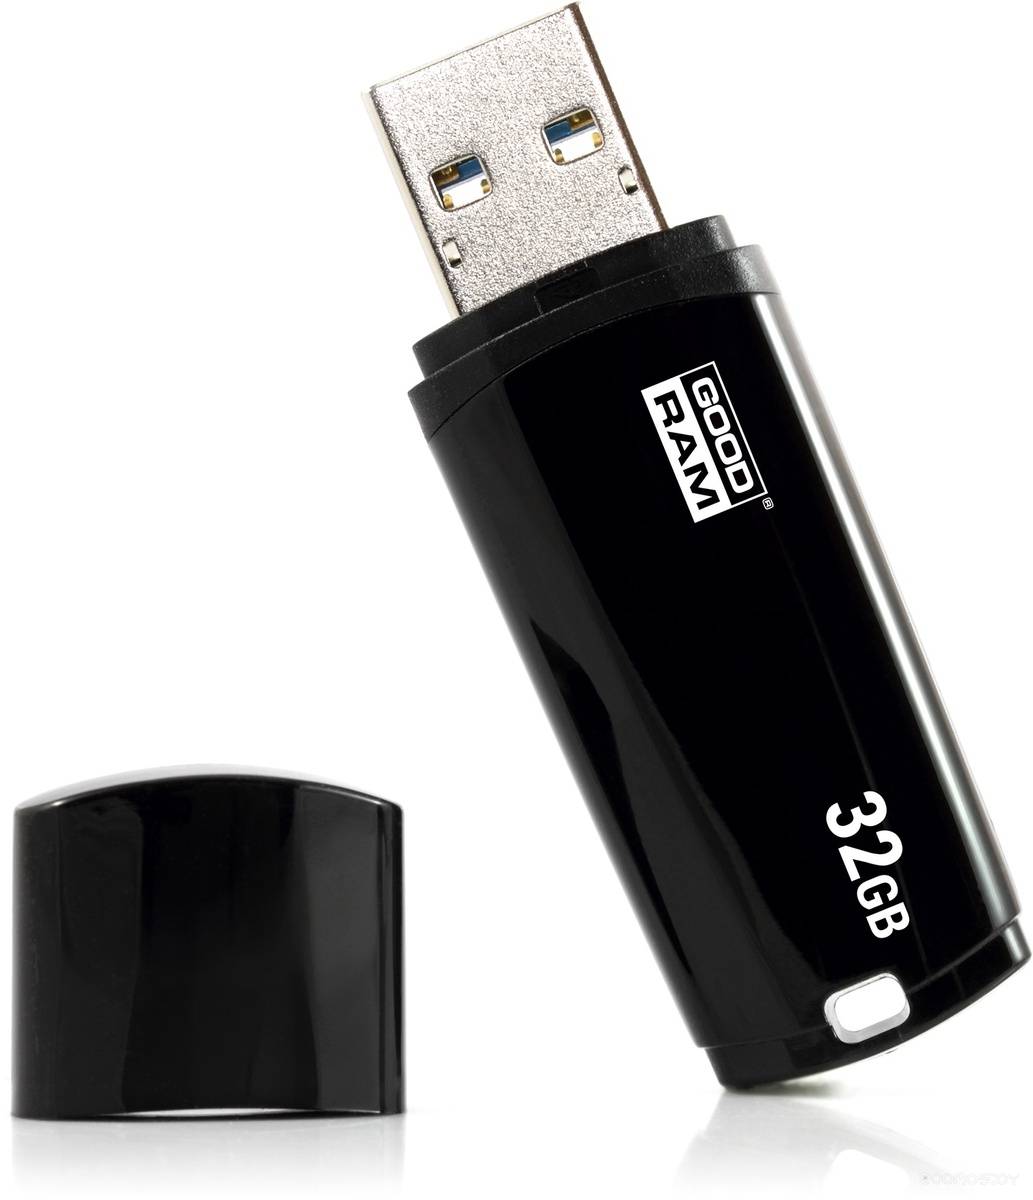 USB Flash GoodRAM UMM3 32Gb (Black)     